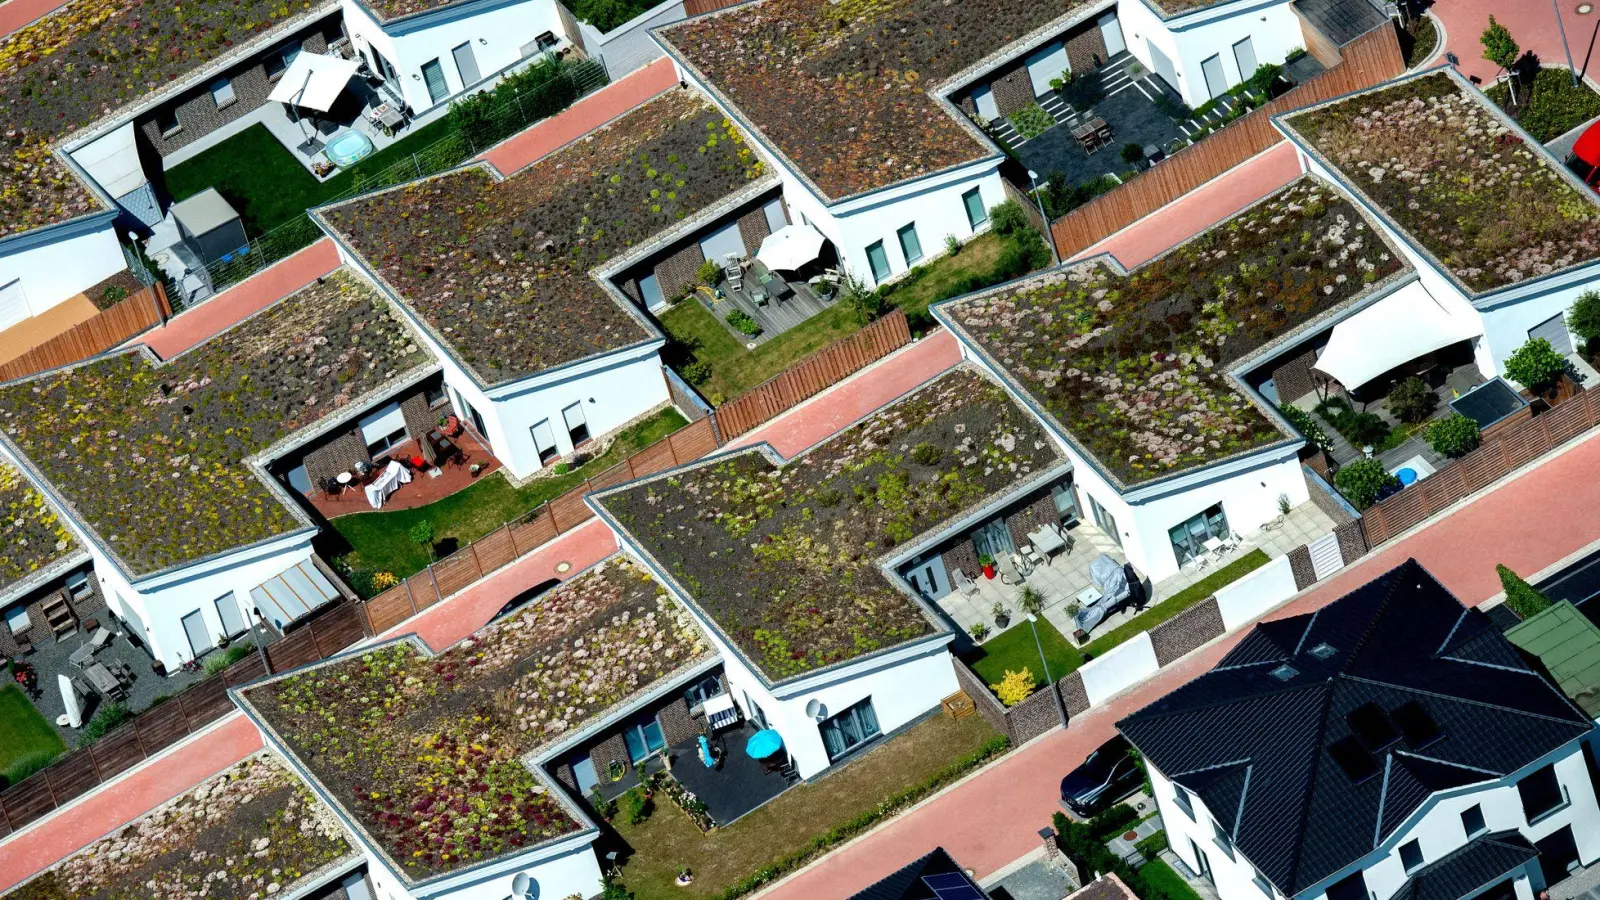 Auch Steildächer können bepflanzt werden, sofern die Dachneigung maximal 35 Grad beträgt. Bepflanzte Dächer fördern die Artenvielfalt und absorbieren CO2 sowie Feinstaub. (Foto: Hauke-Christian Dittrich/dpa/dpa-tmn)